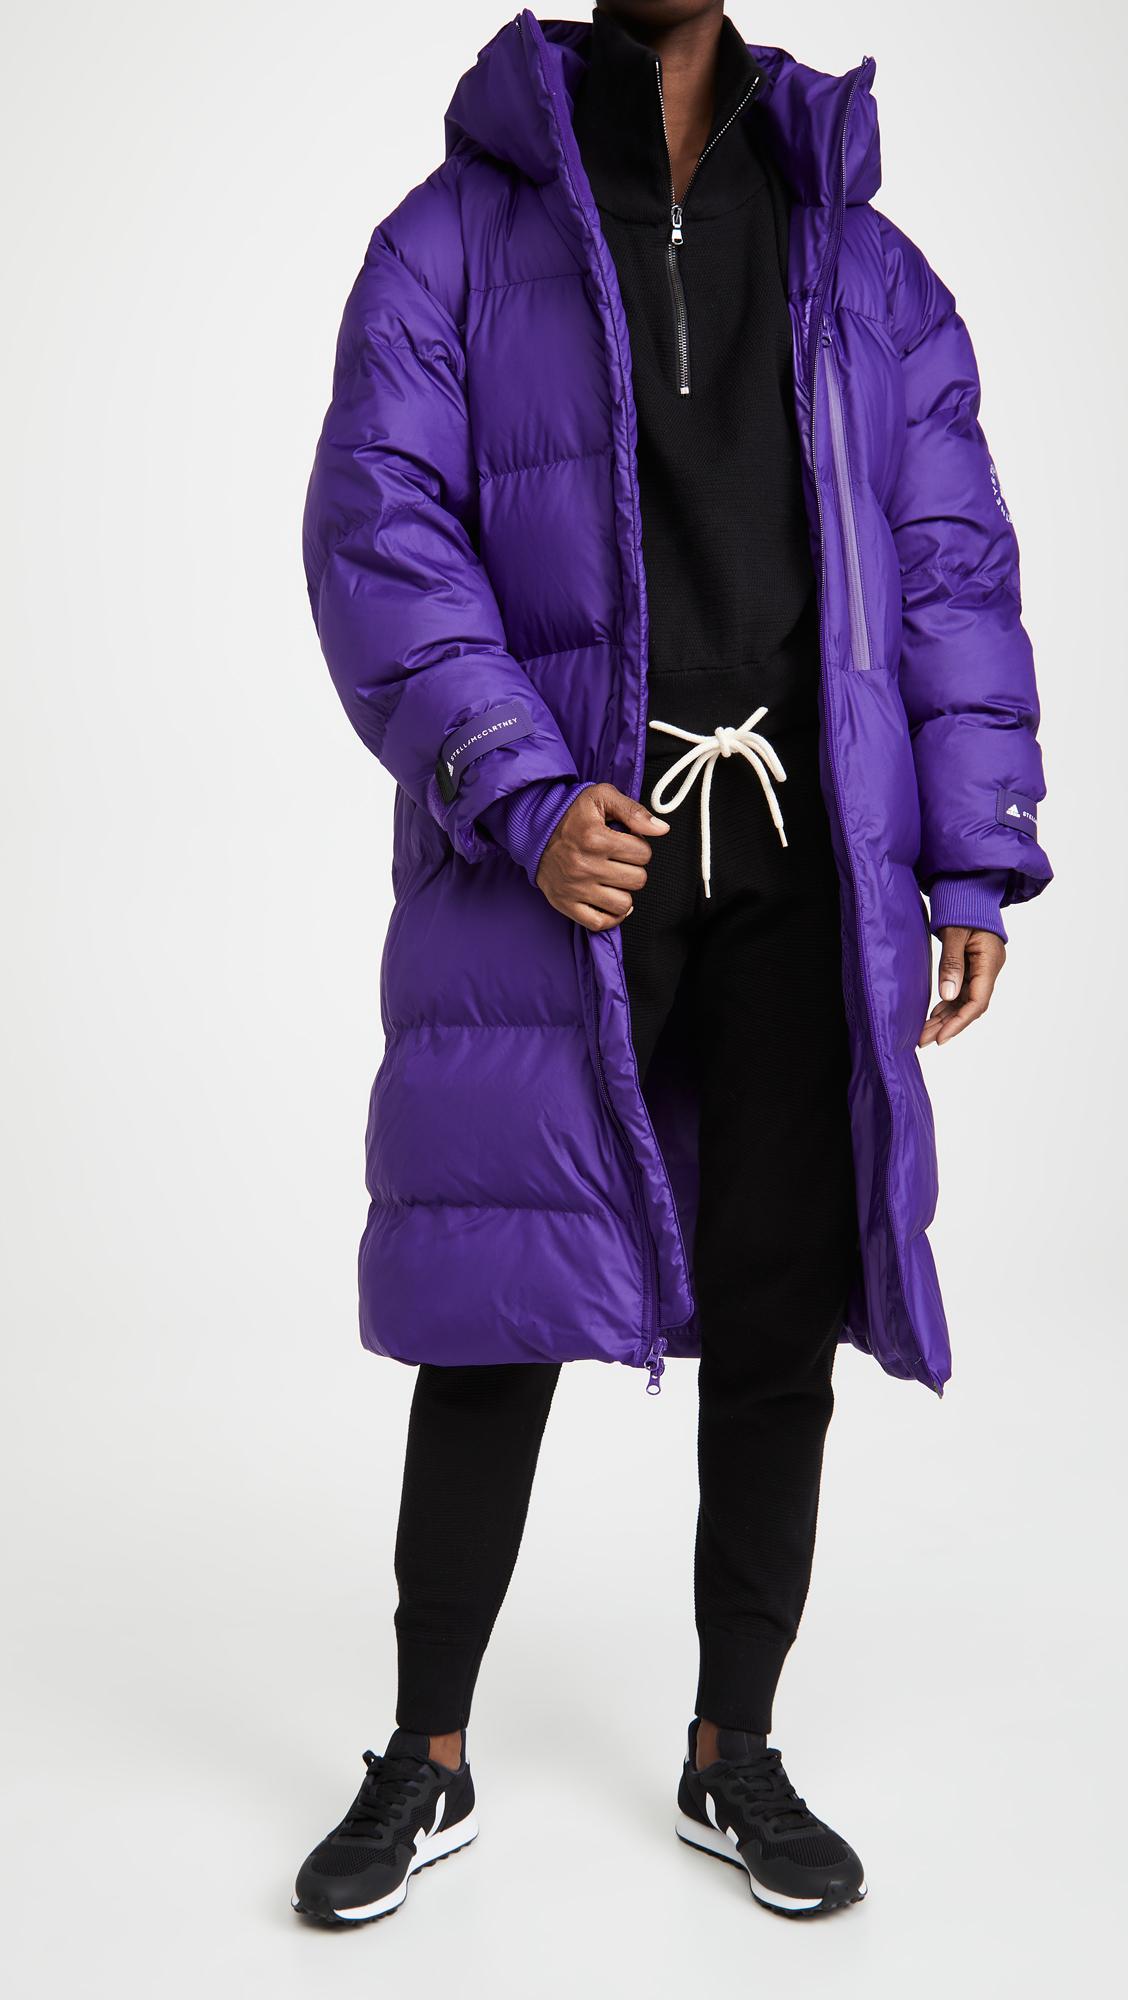 adidas By Stella McCartney Long Puffer Jacket in Purple | Lyst